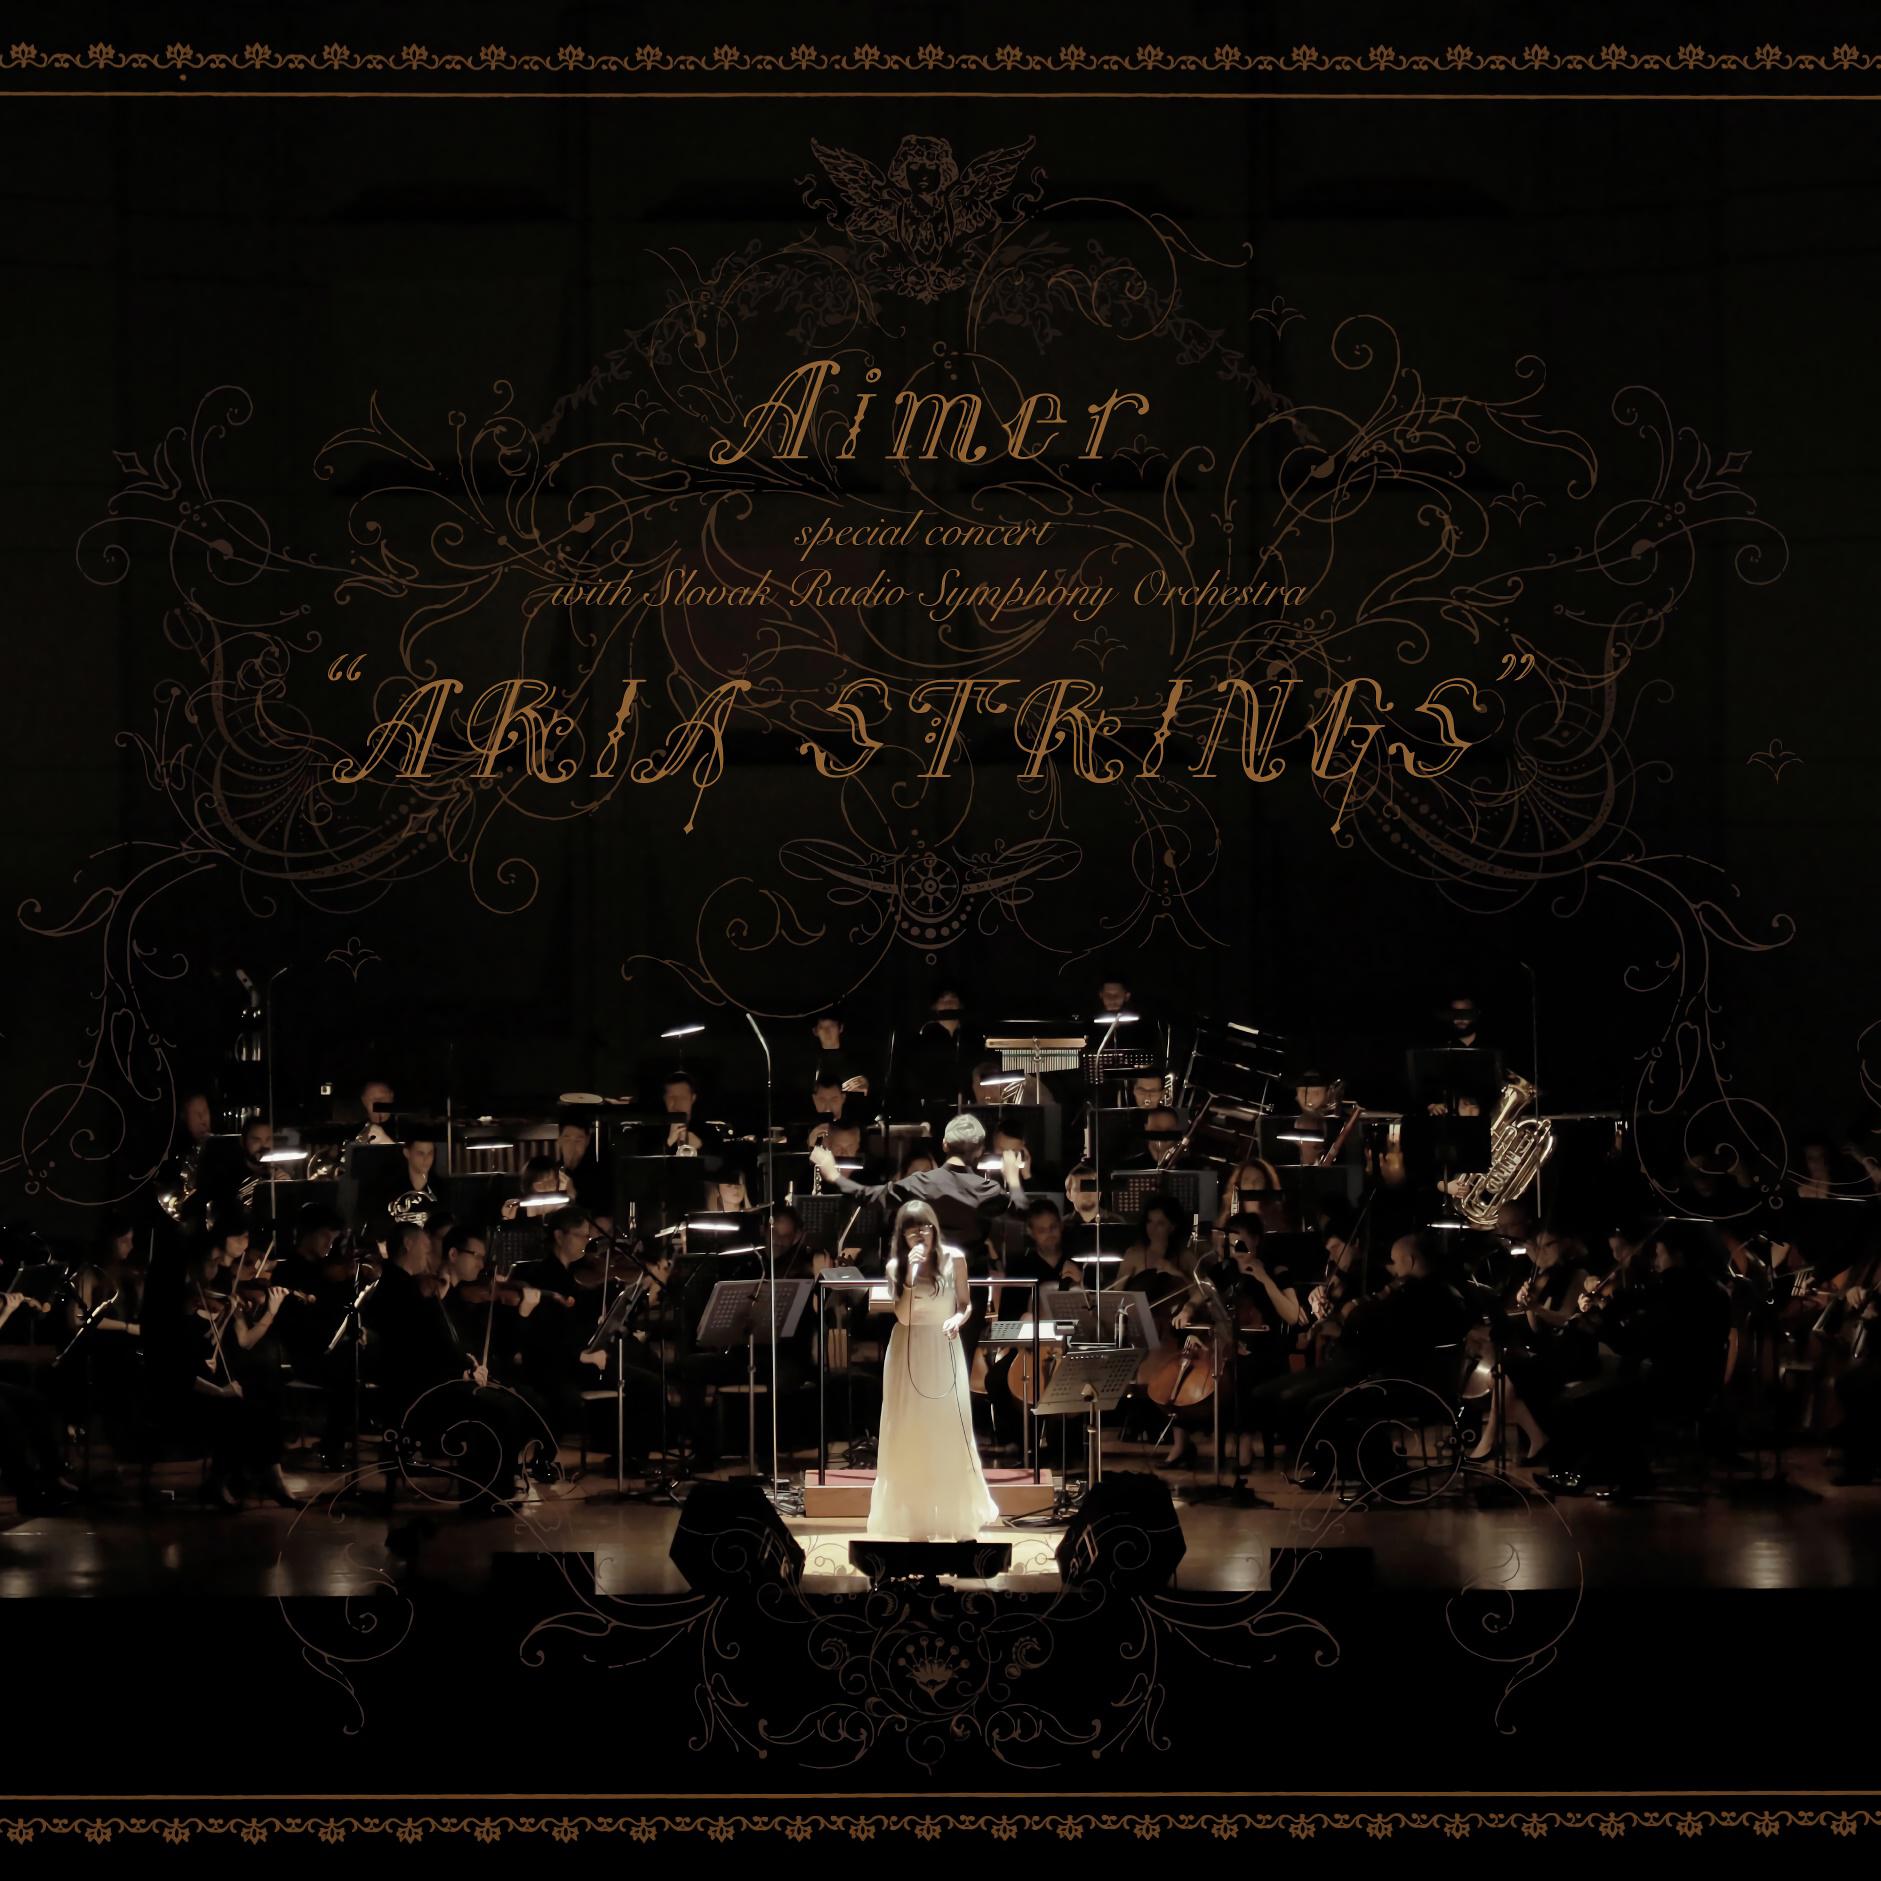 寂しくて眠れない夜は歌词 歌手Aimer-专辑Aimer special concert with スロヴァキア国立放送交響楽団 